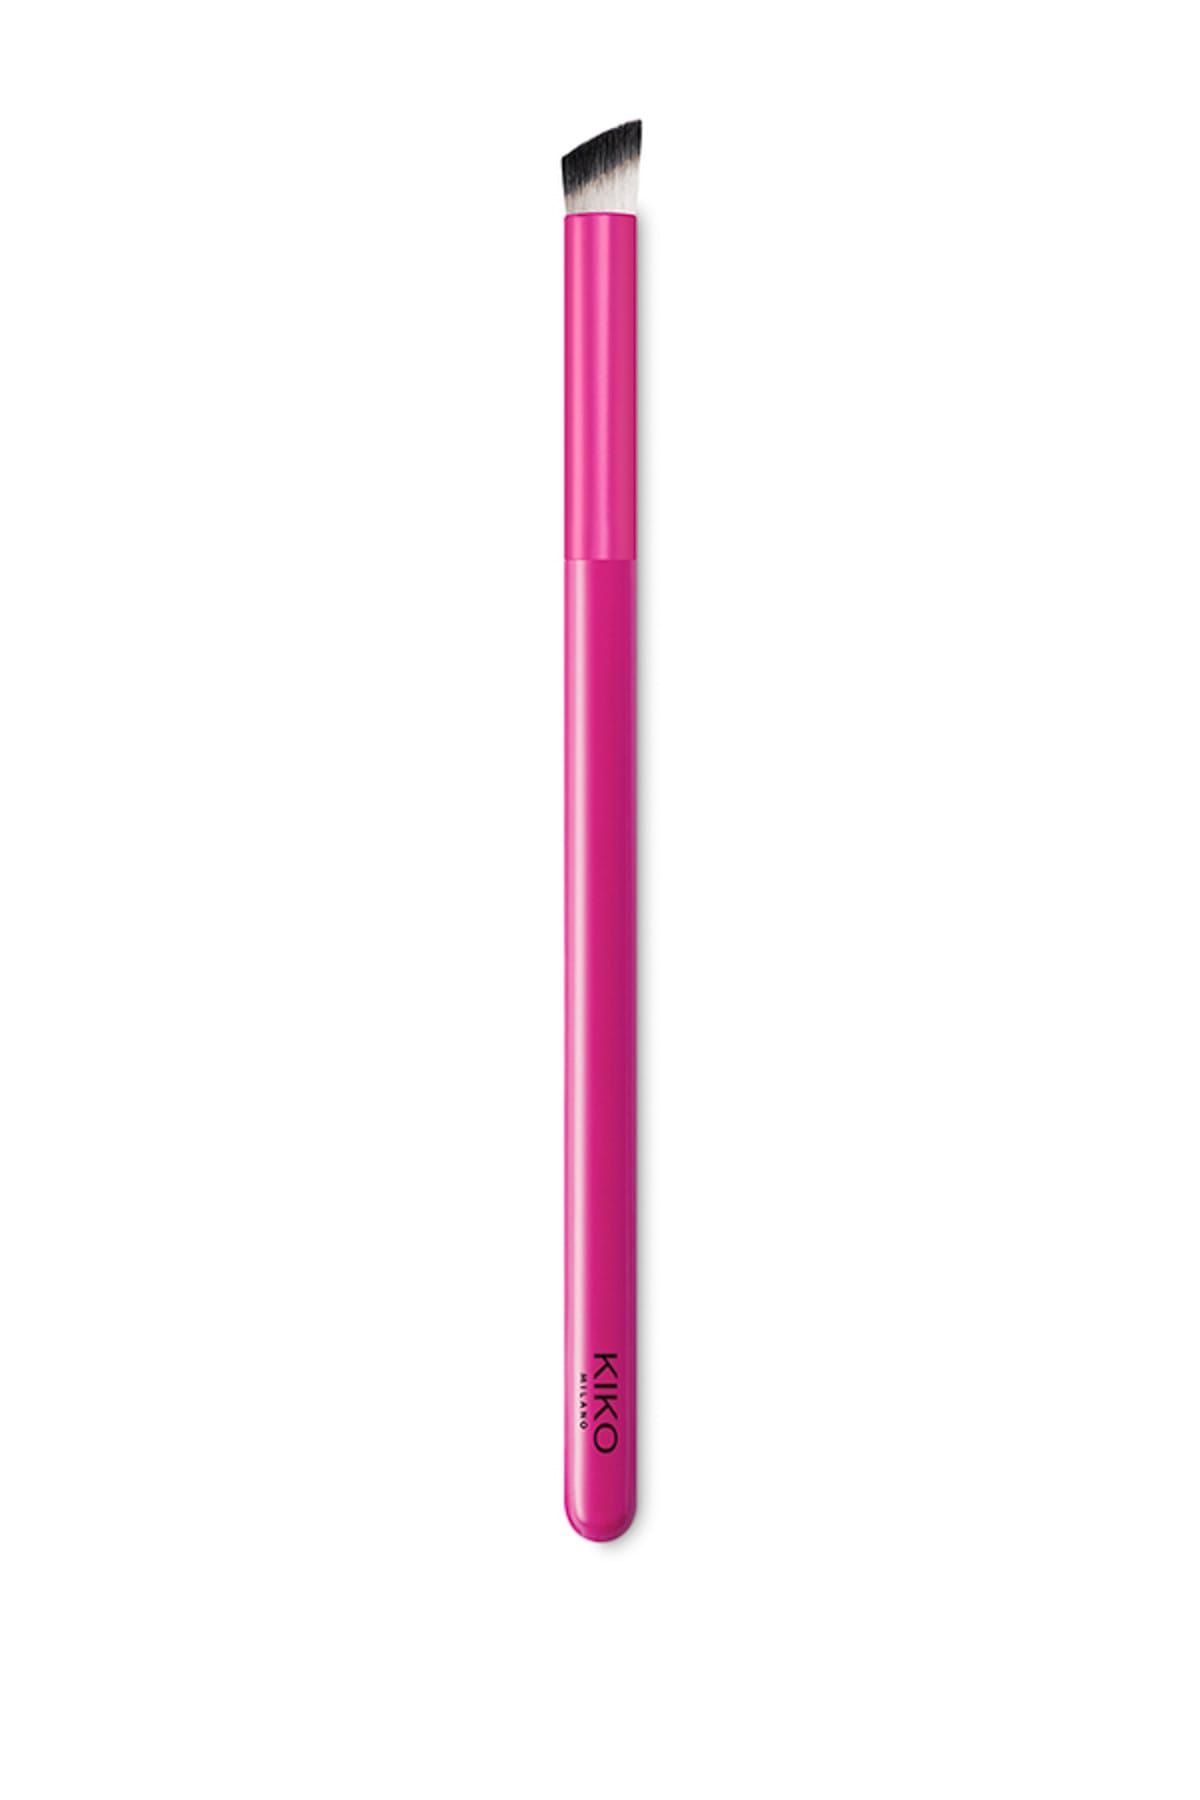 KIKO Karıştırma Fırçası - Smart Blending Brush 201 8025272628556